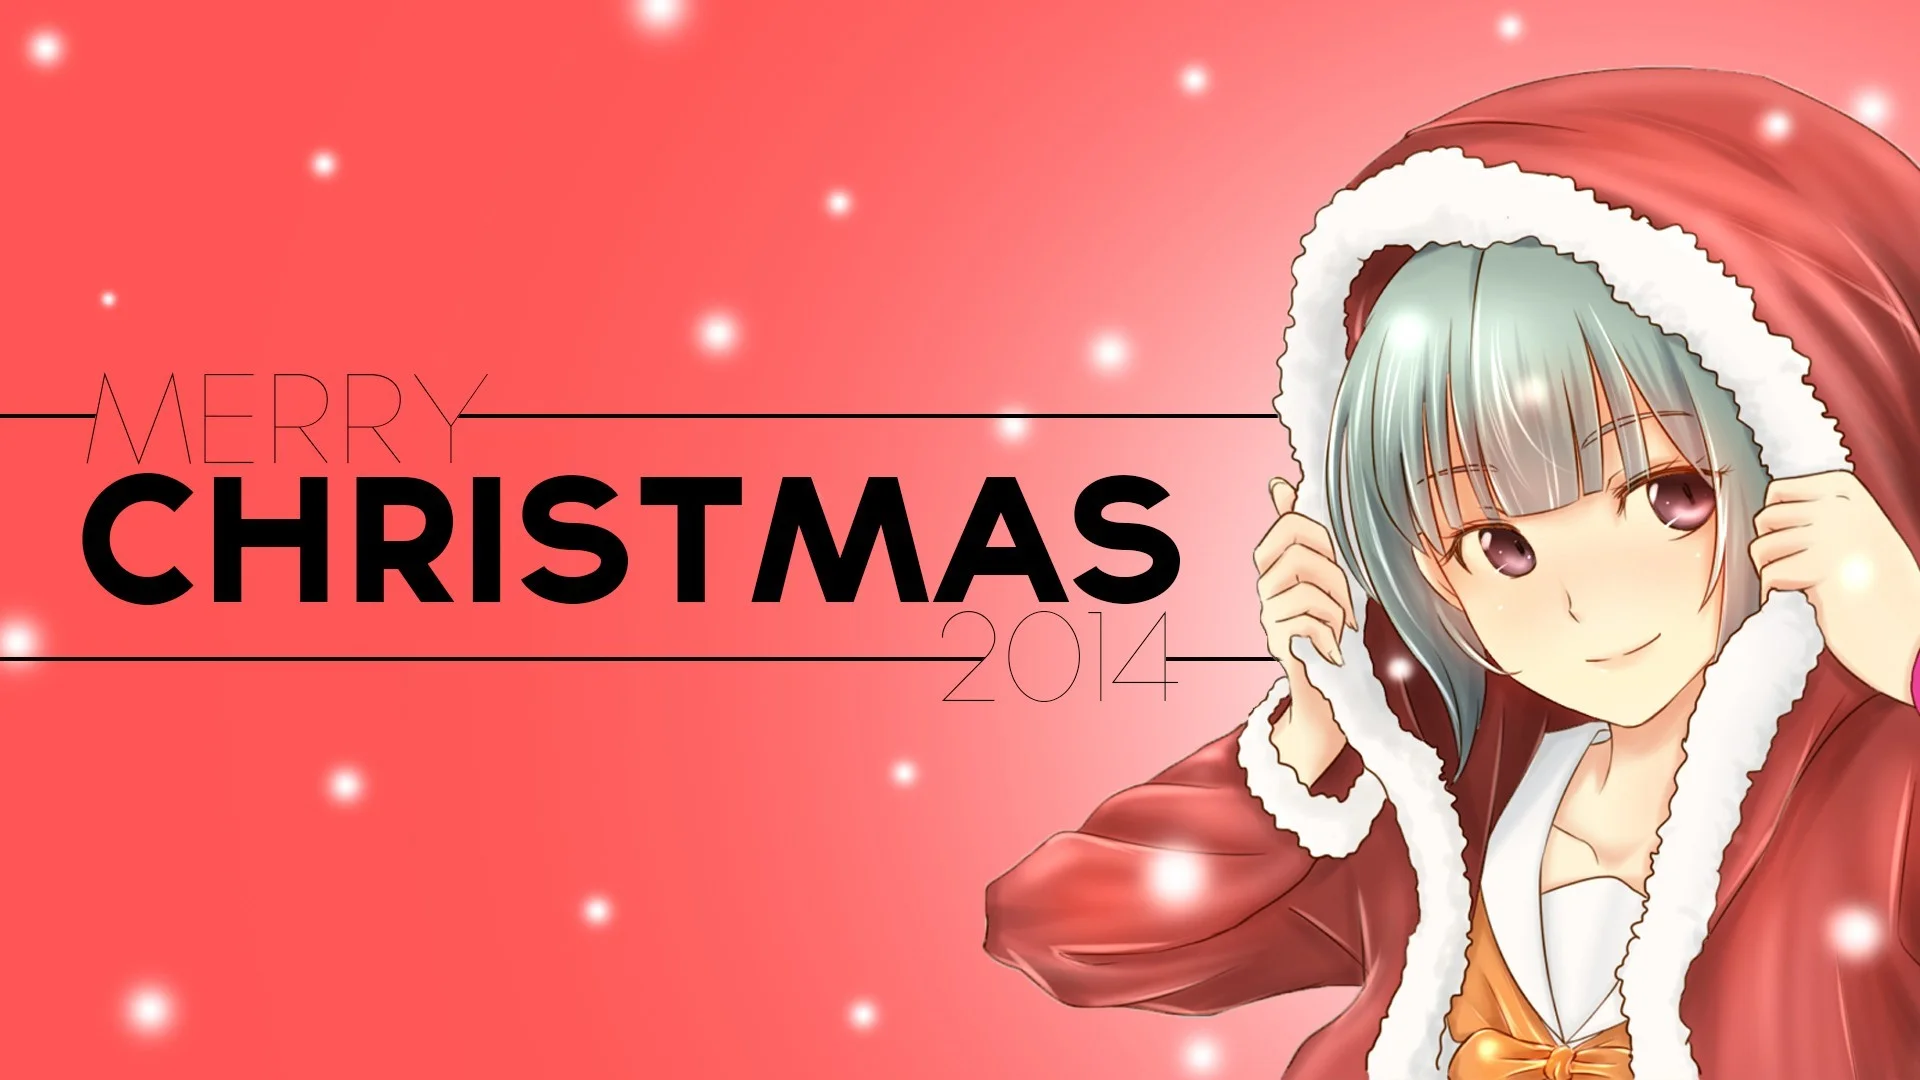 anime christmas girl wallpaper